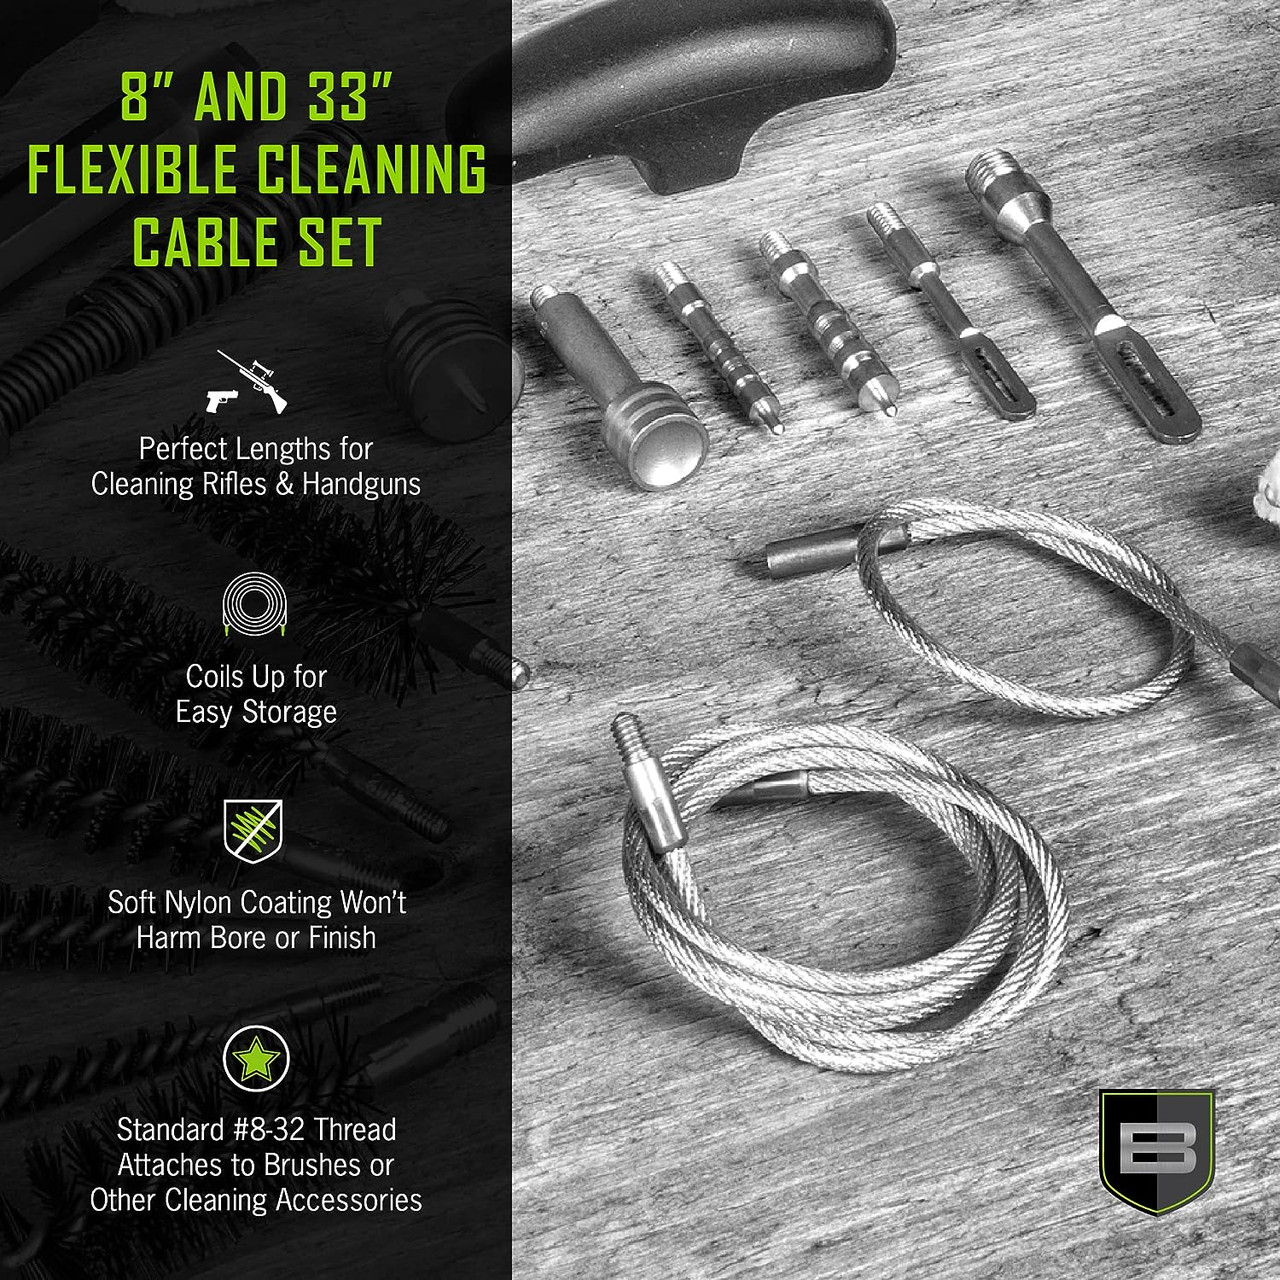 Breakthrough Clean Flexible Cleaning Cable Set (8" & 33") - BT-SCBT-SET